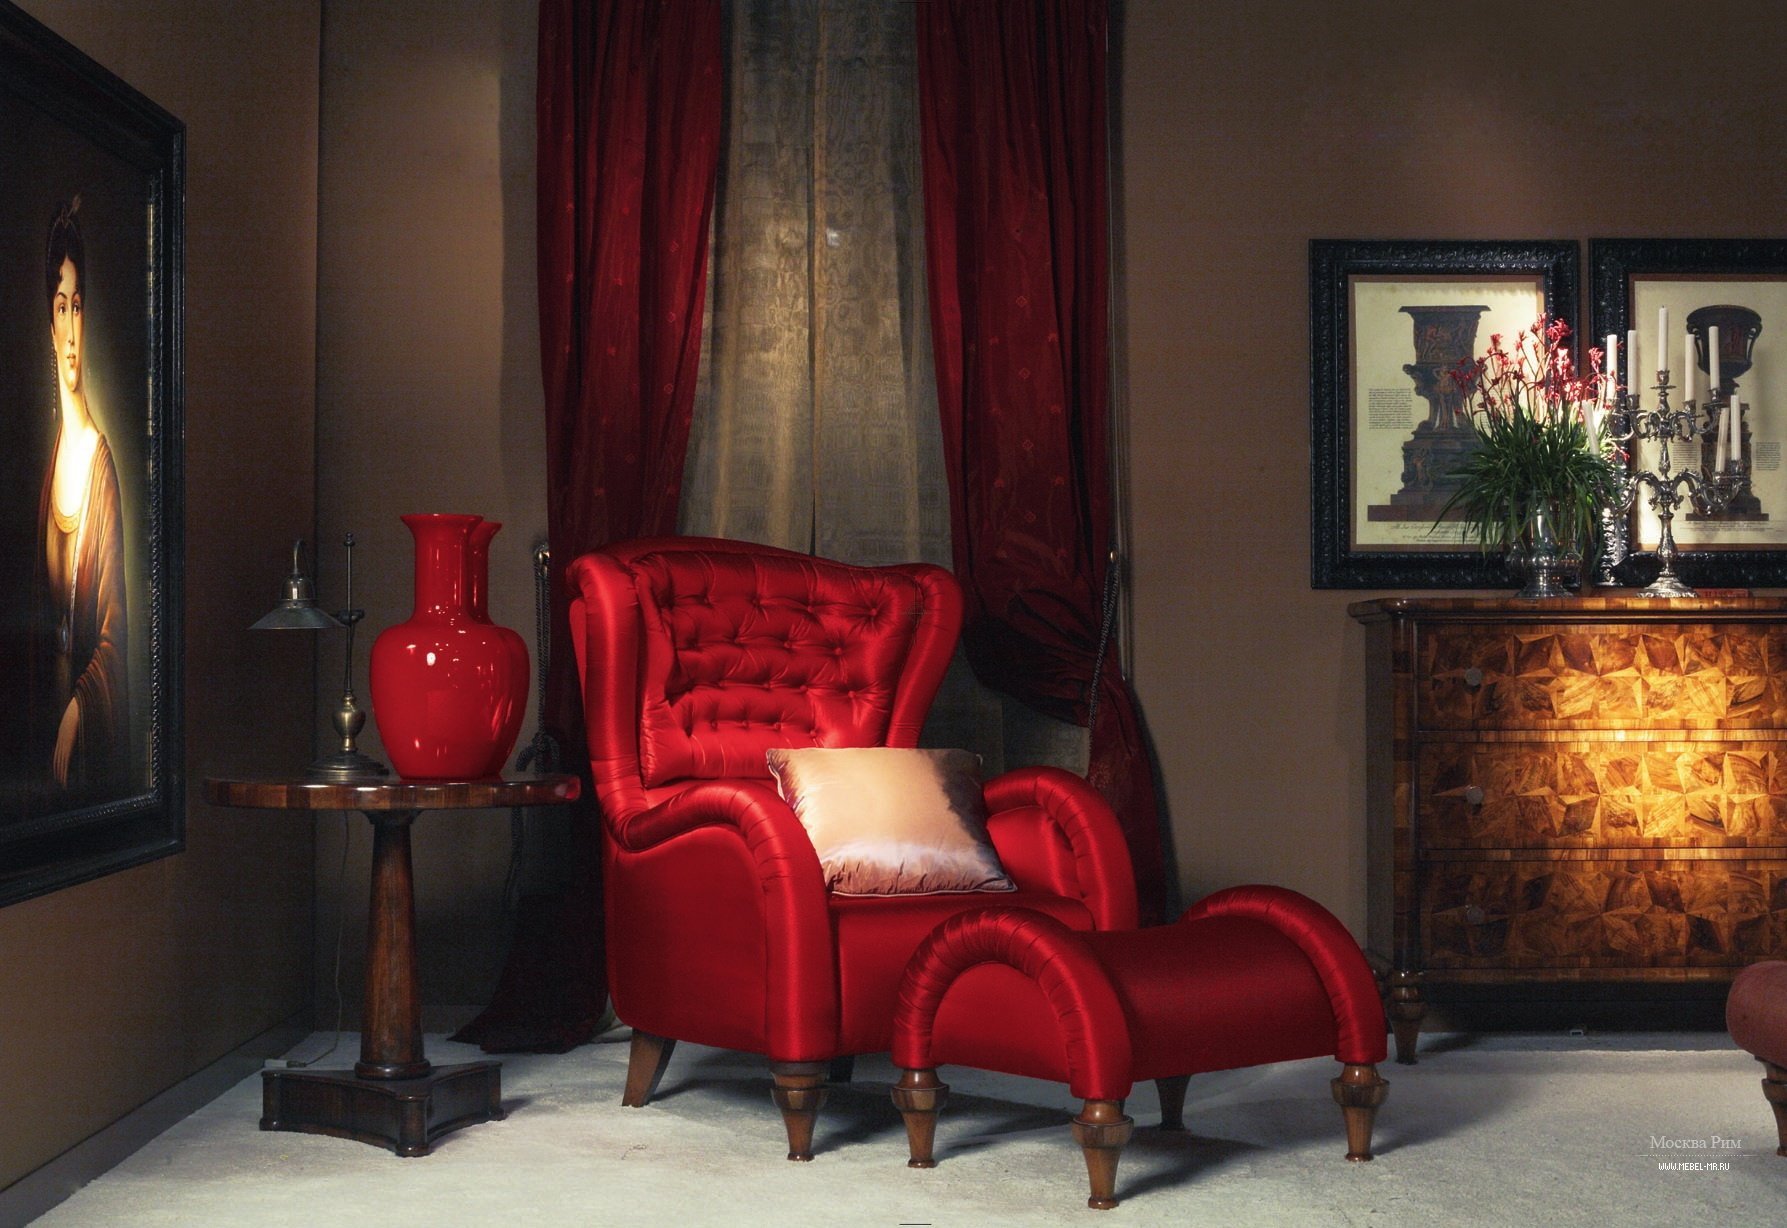 Алы мебель. Annibale Colombo мебель. Кресло с банкеткой Bergere restauration 161. Красное кресло в интерьере. Красная мебель в интерьере.